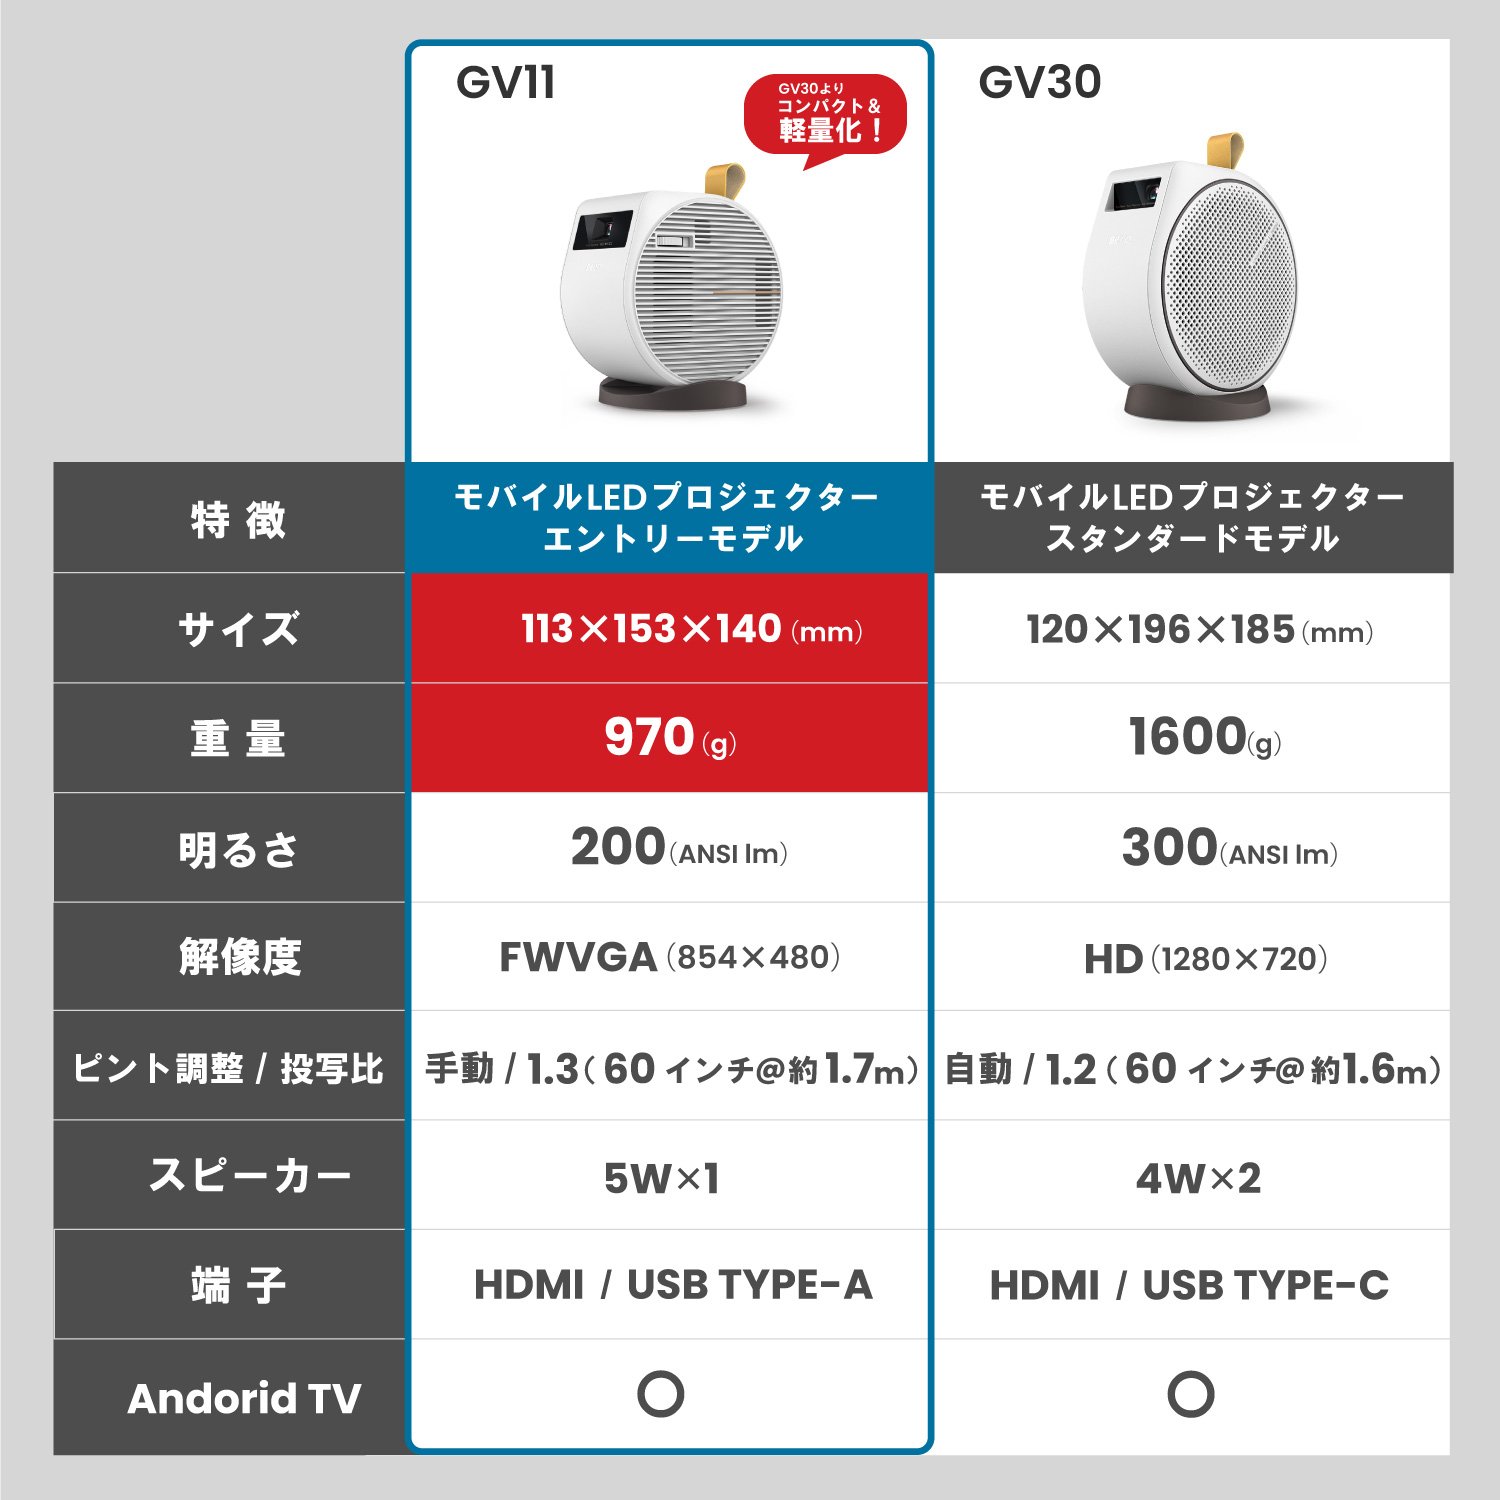 天井投影可能なモバイルプロジェクター | GV11 | ベンキュージャパン